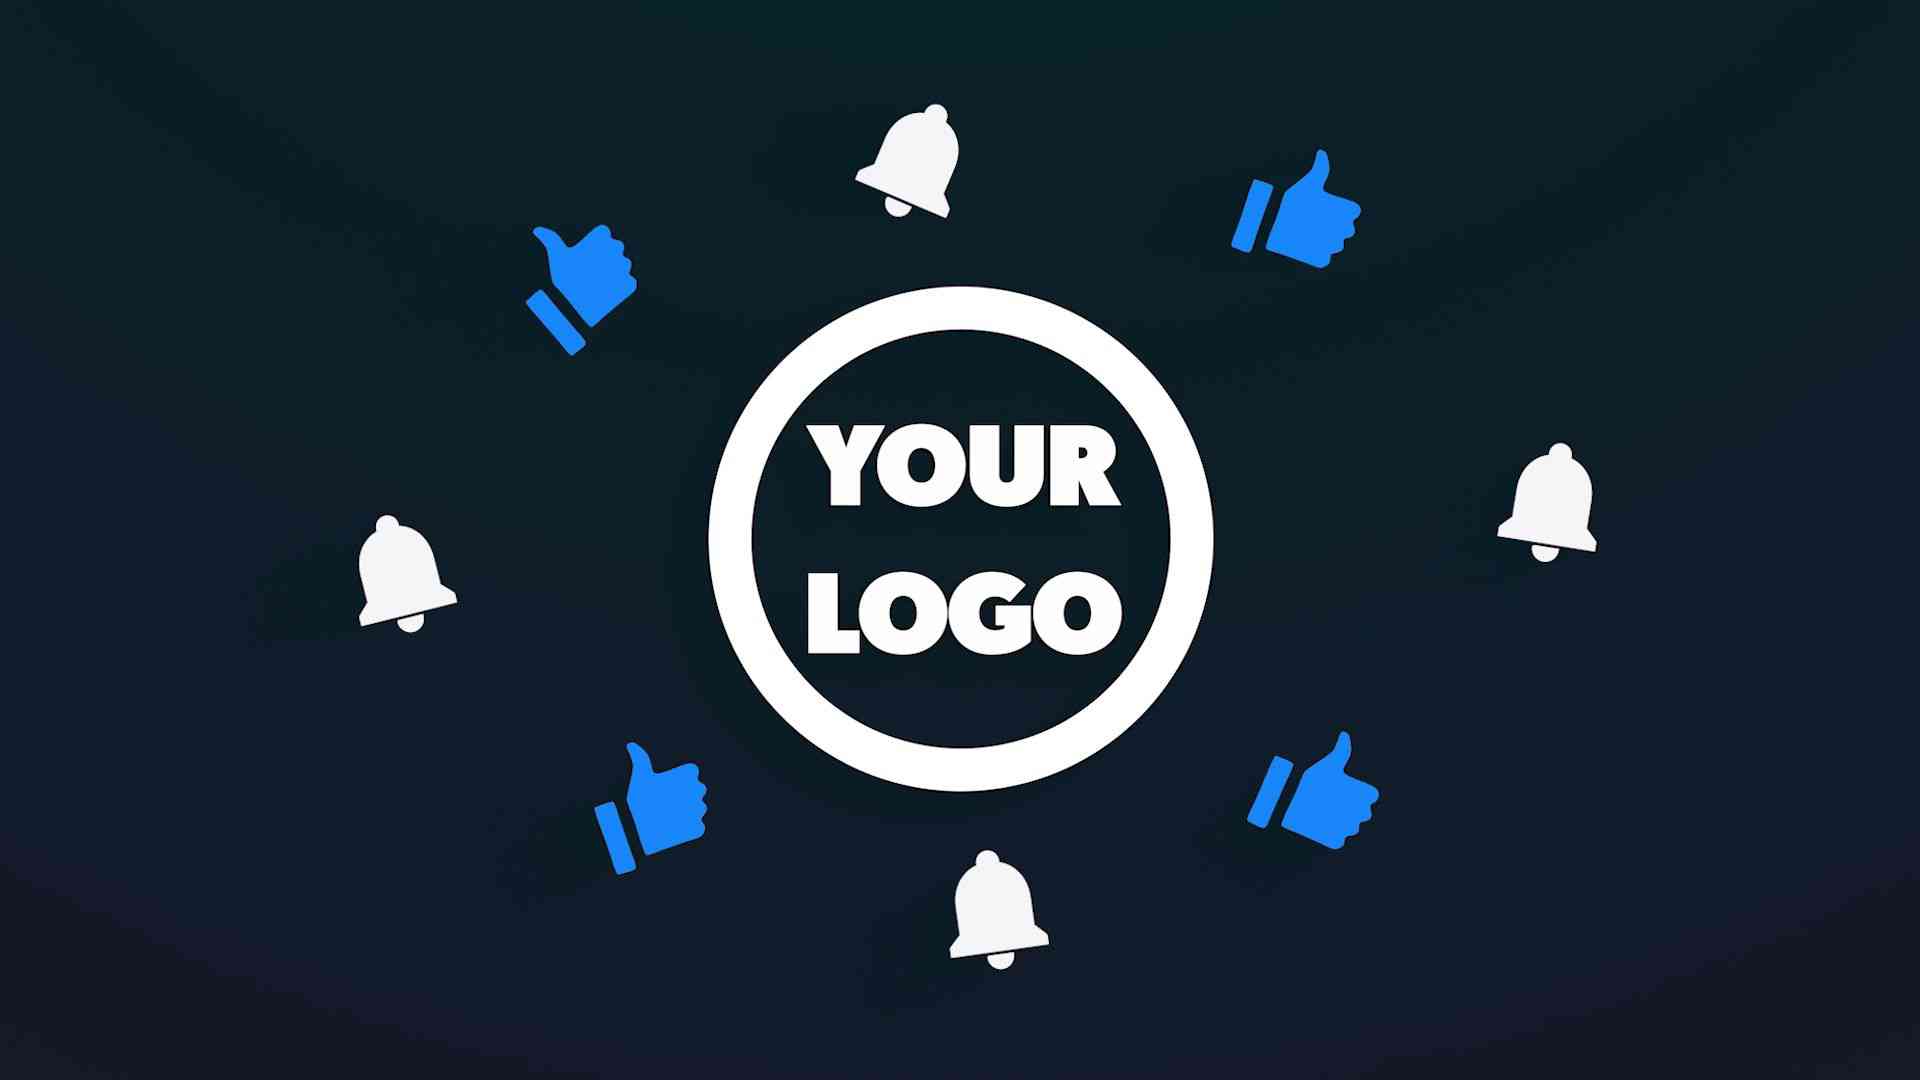 premiere pro logo intro template free download